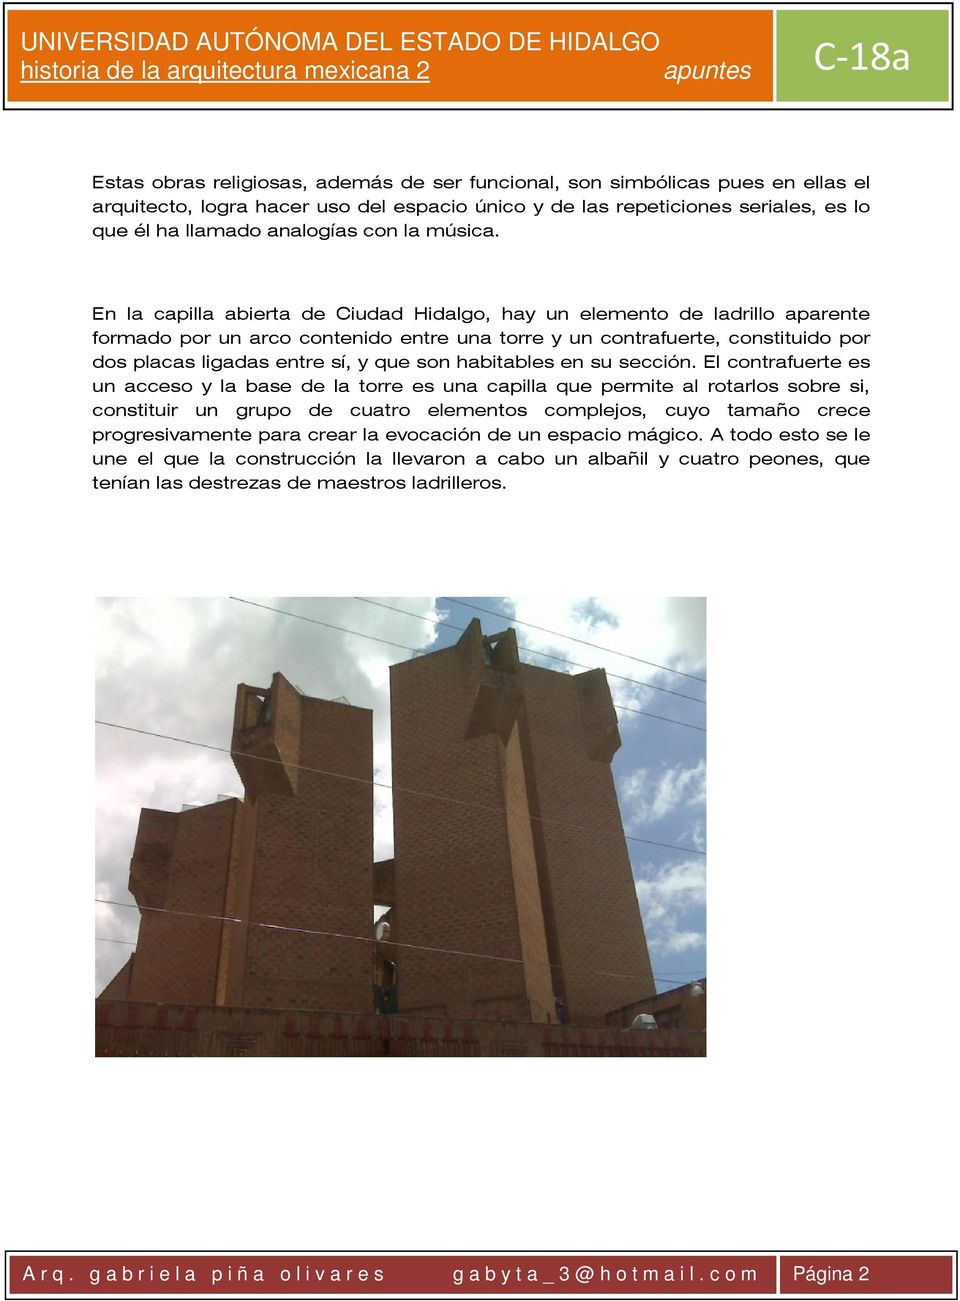 En la capilla abierta de Ciudad Hidalgo, hay un elemento de ladrillo aparente formado por un arco contenido entre una torre y un contrafuerte, constituido por dos placas ligadas entre sí, y que son